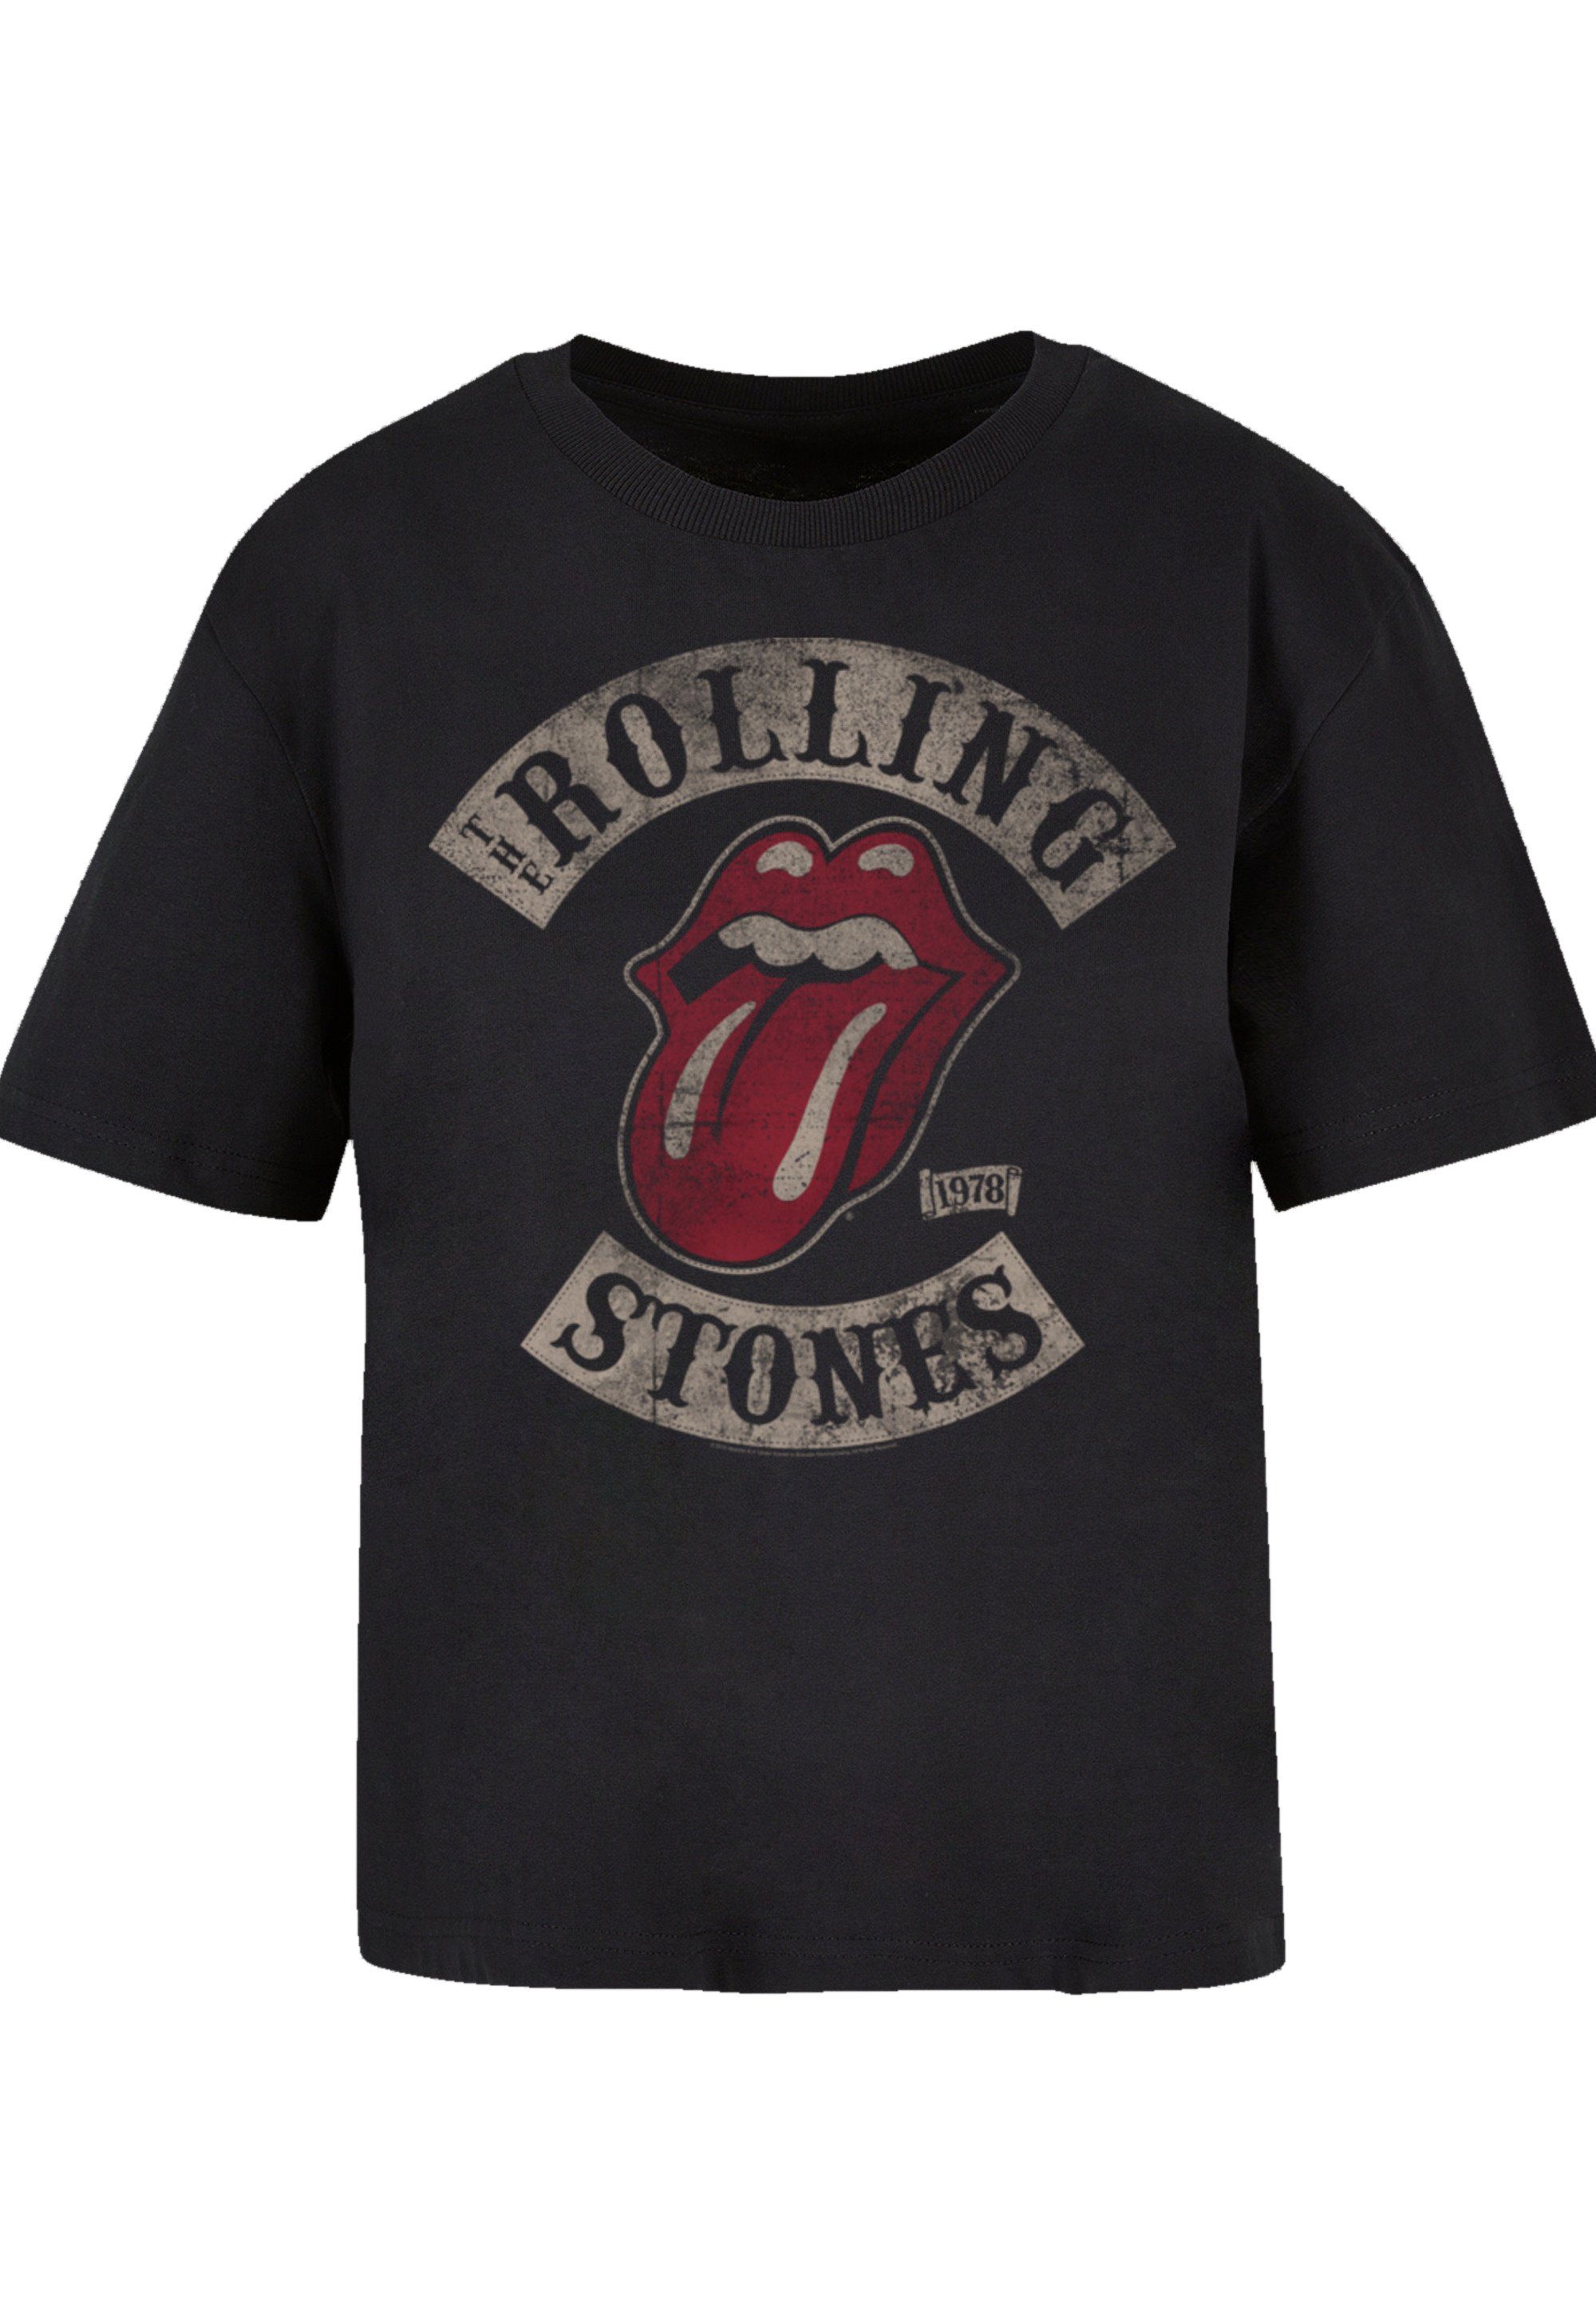 F4NT4STIC T-Shirt Gerippter Rundhalsausschnitt Rolling Stones The für Look Tour Print, \'78 stylischen Vector